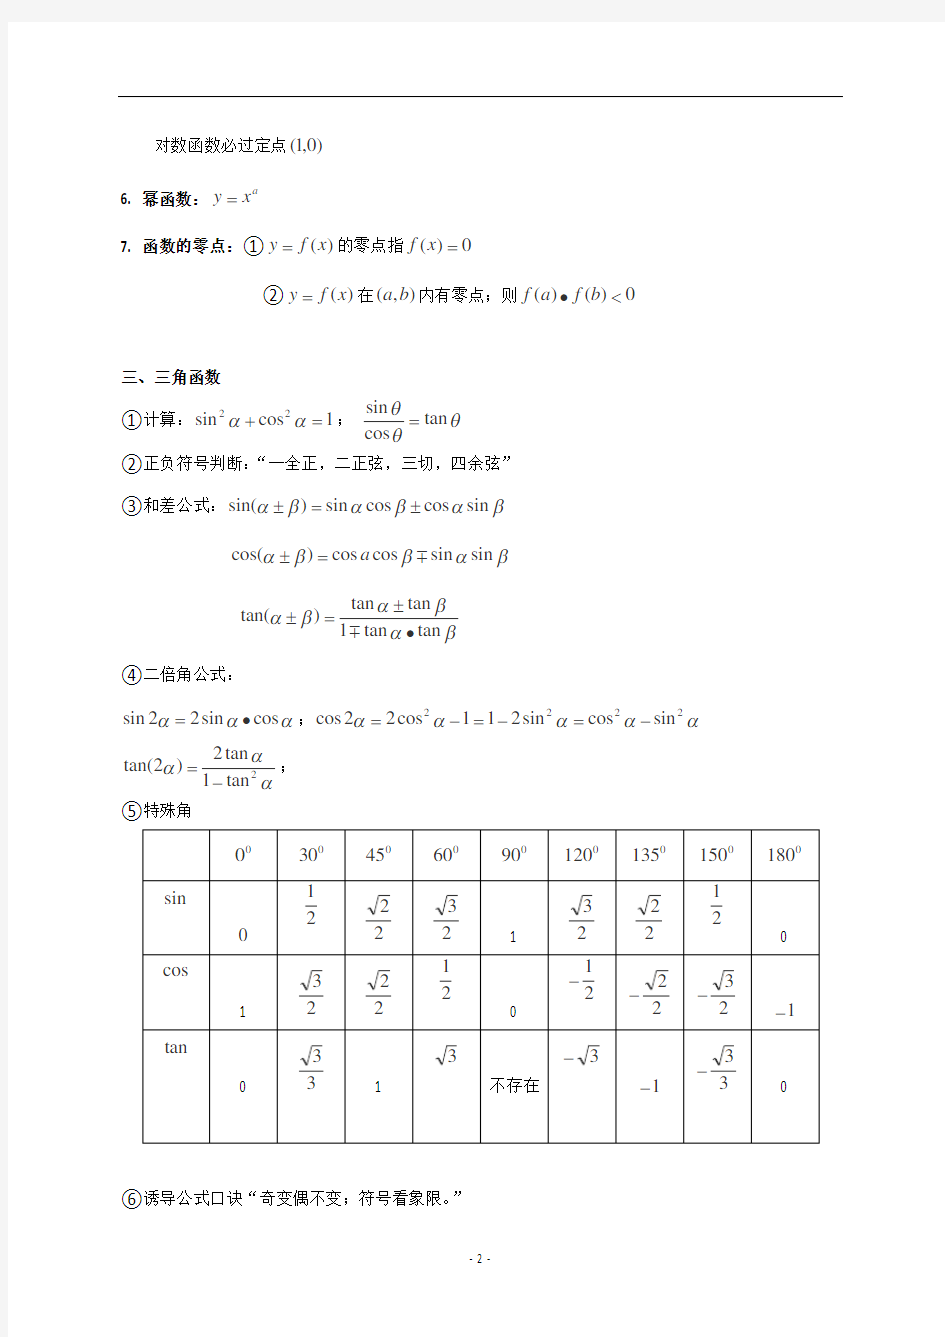 (完整)江苏省高中数学公式